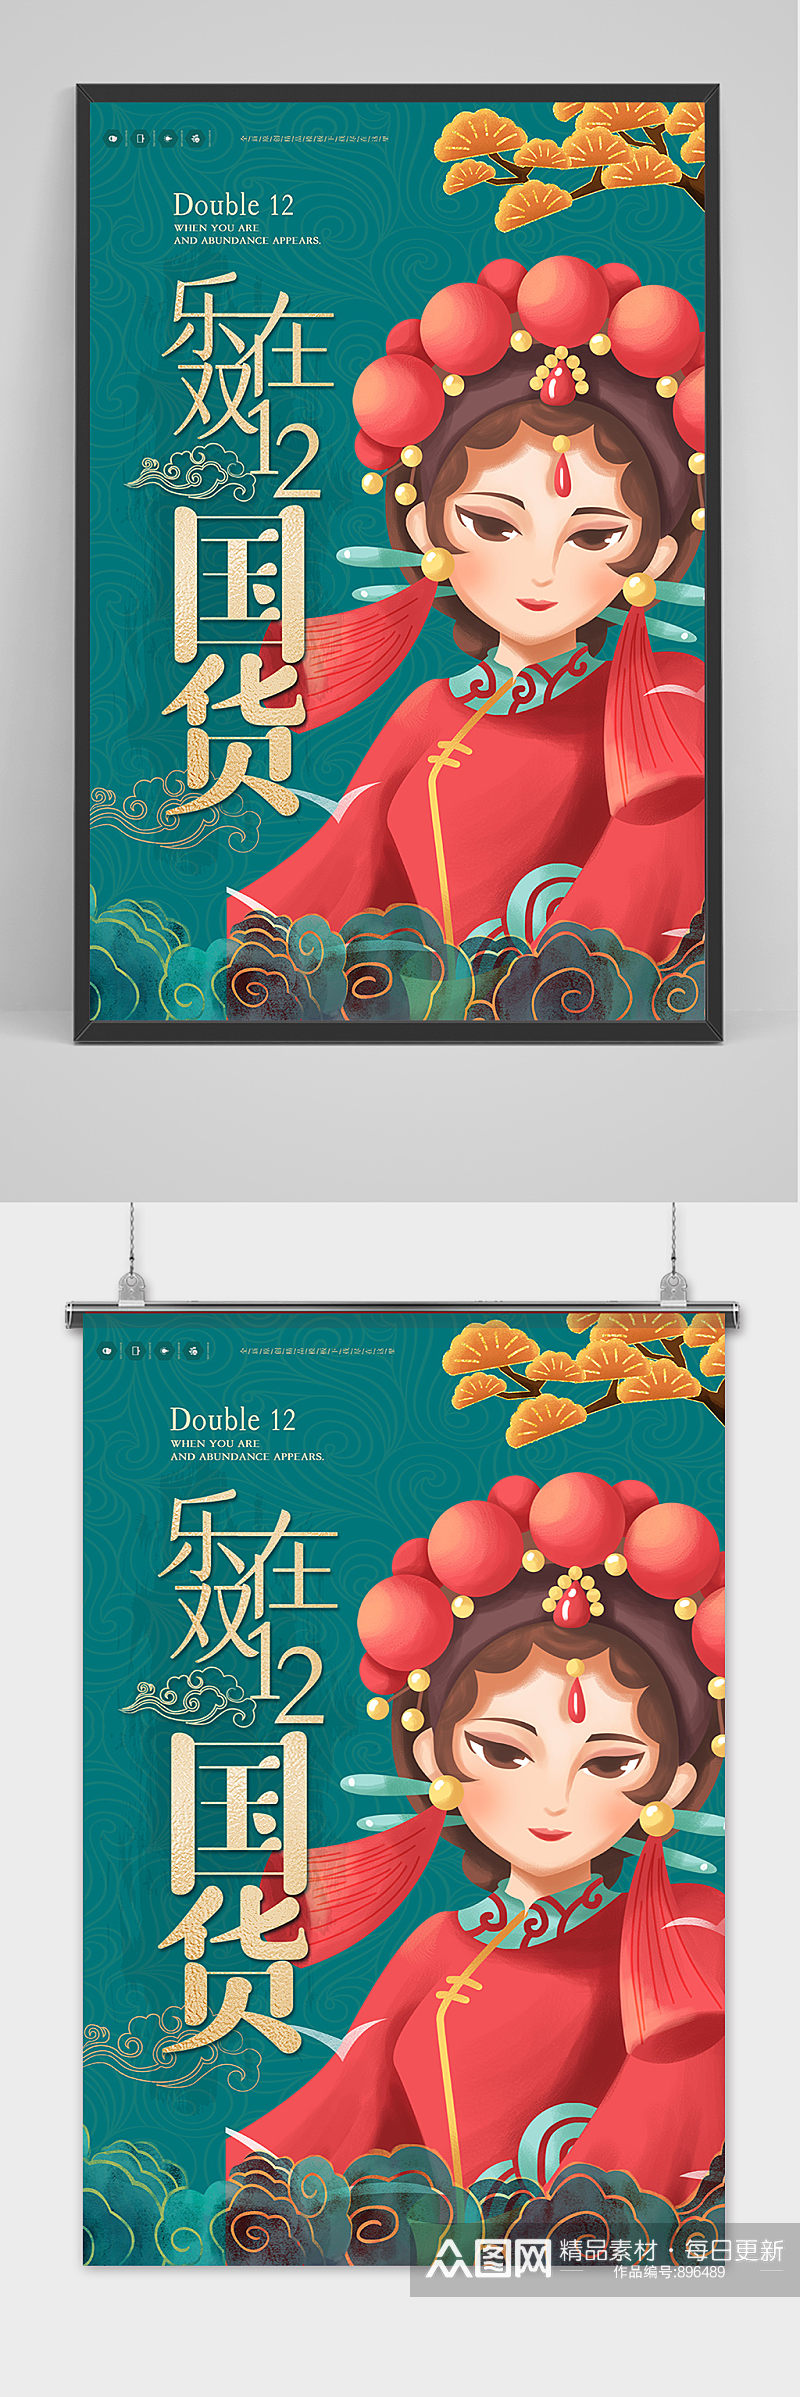 国潮双十二特惠宣传海报模板设计素材